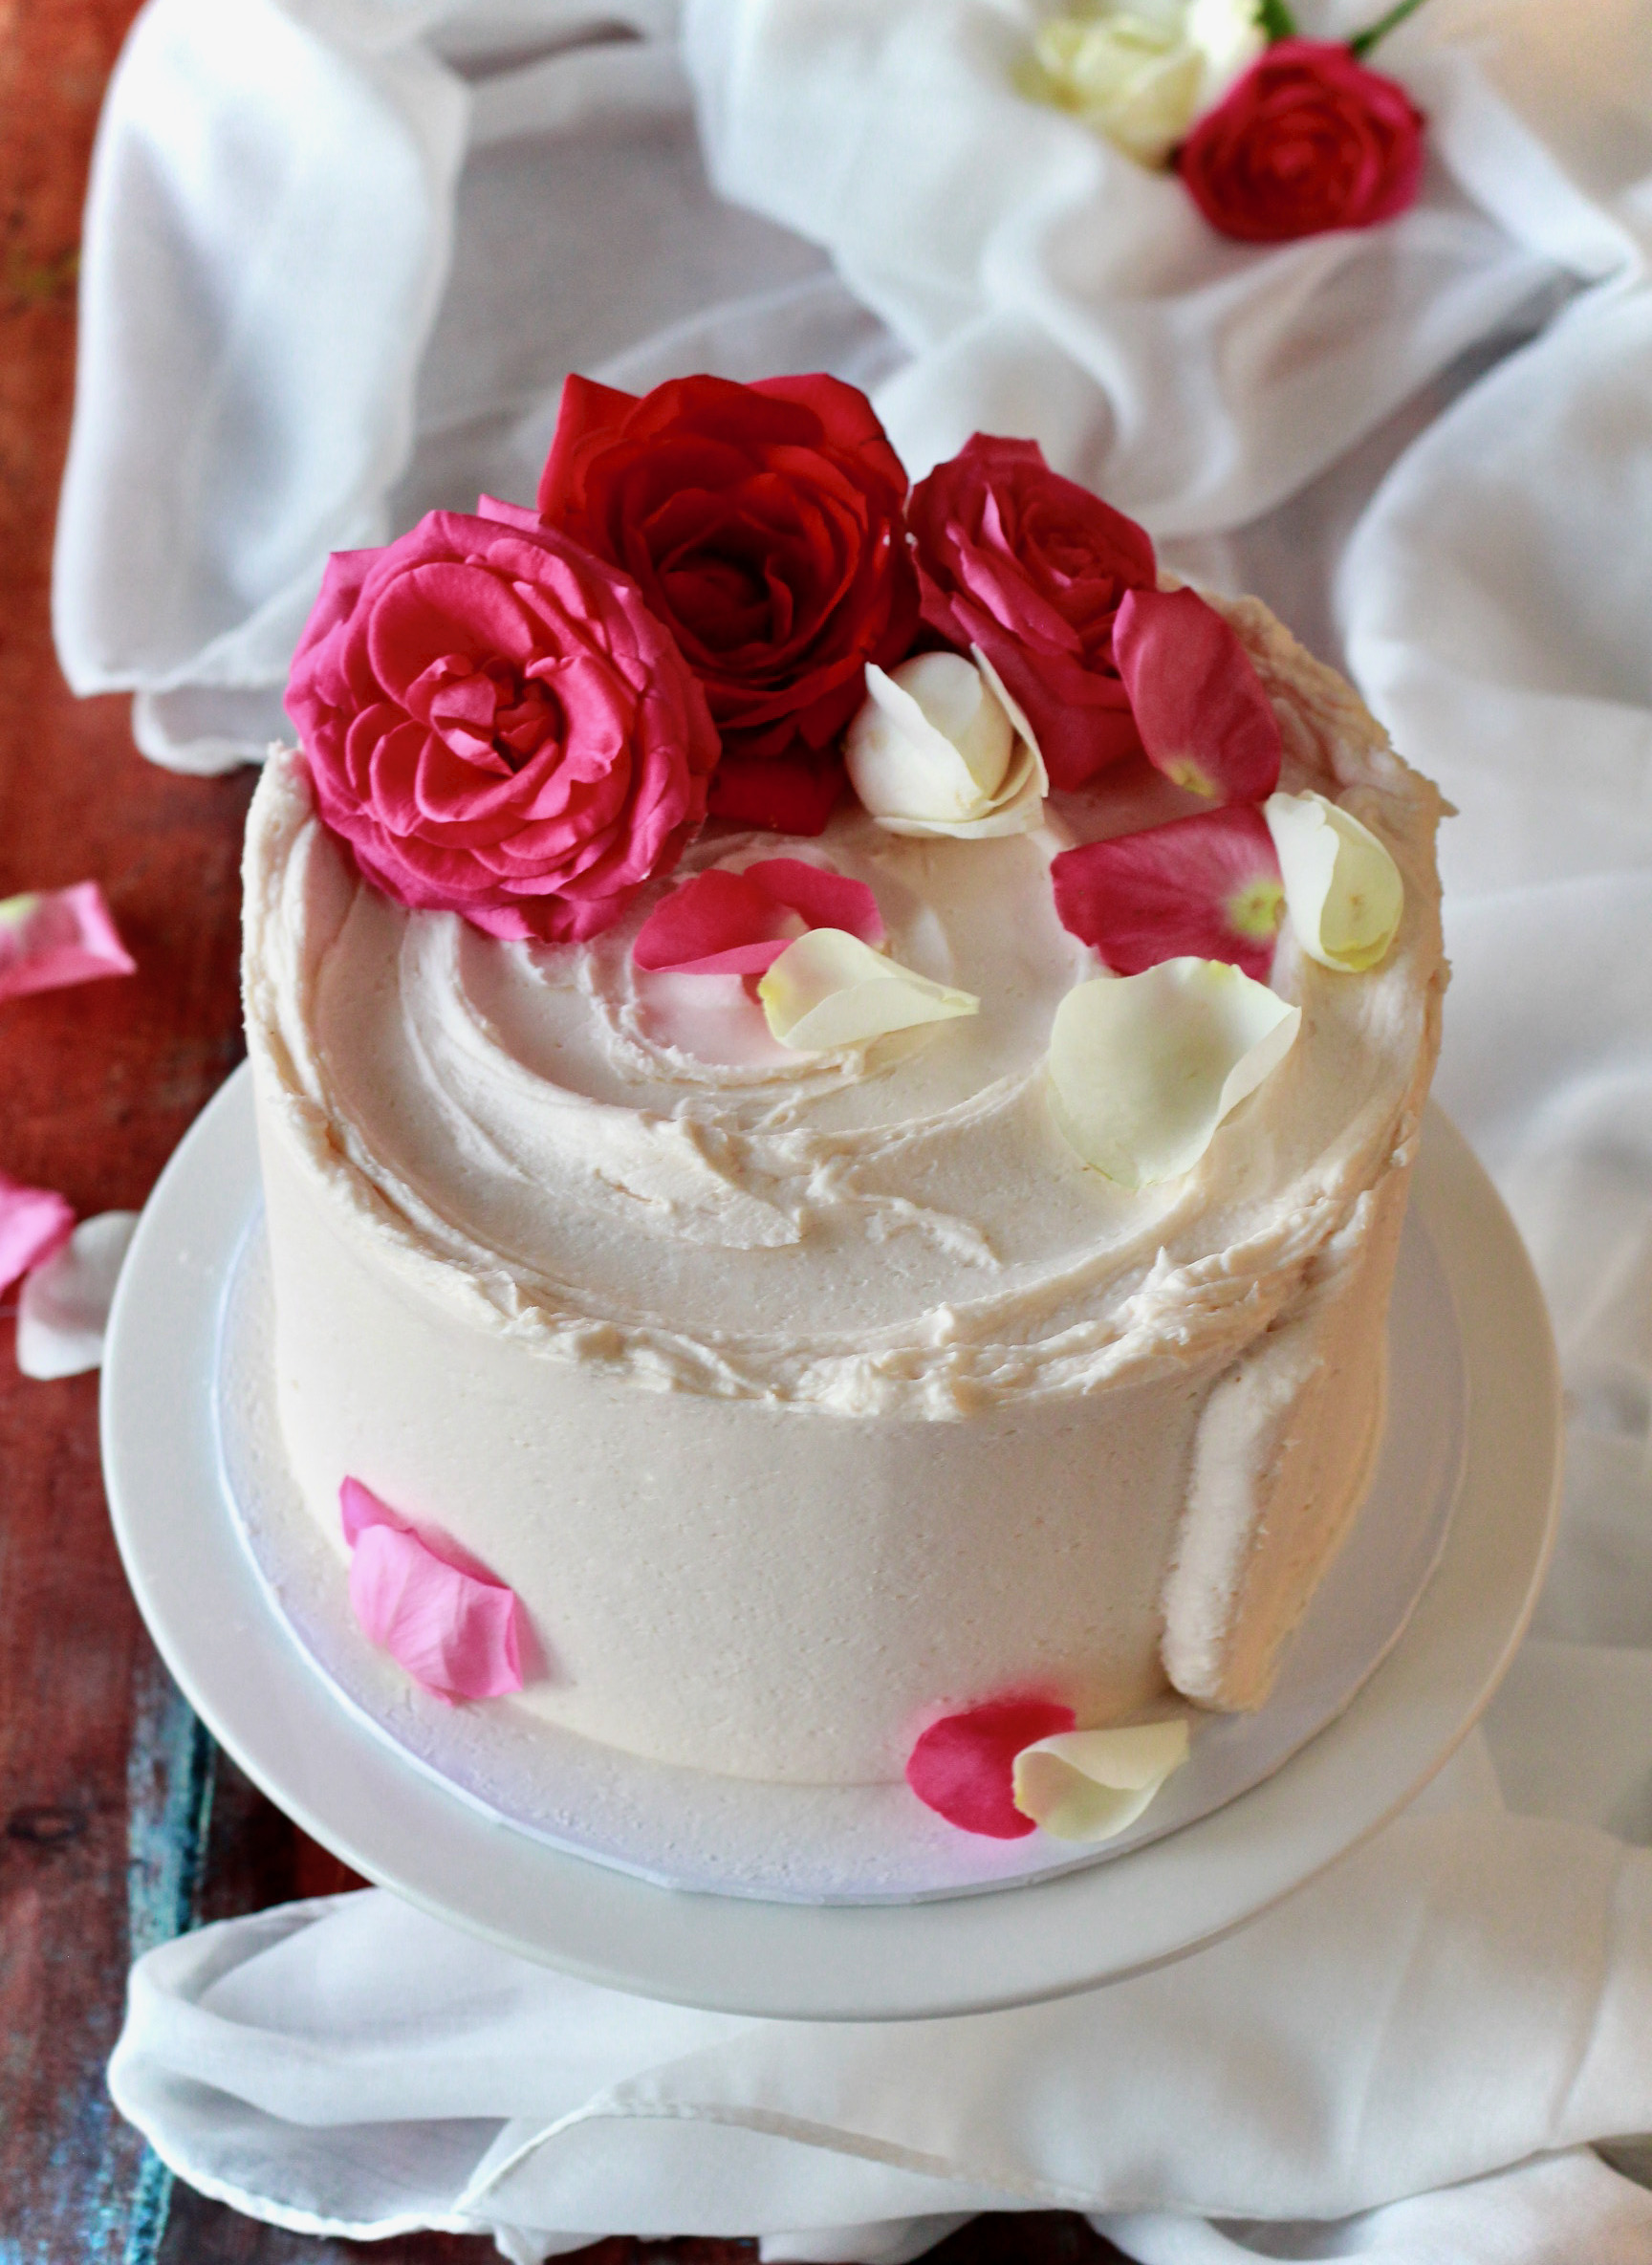 Rose and vanilla cake